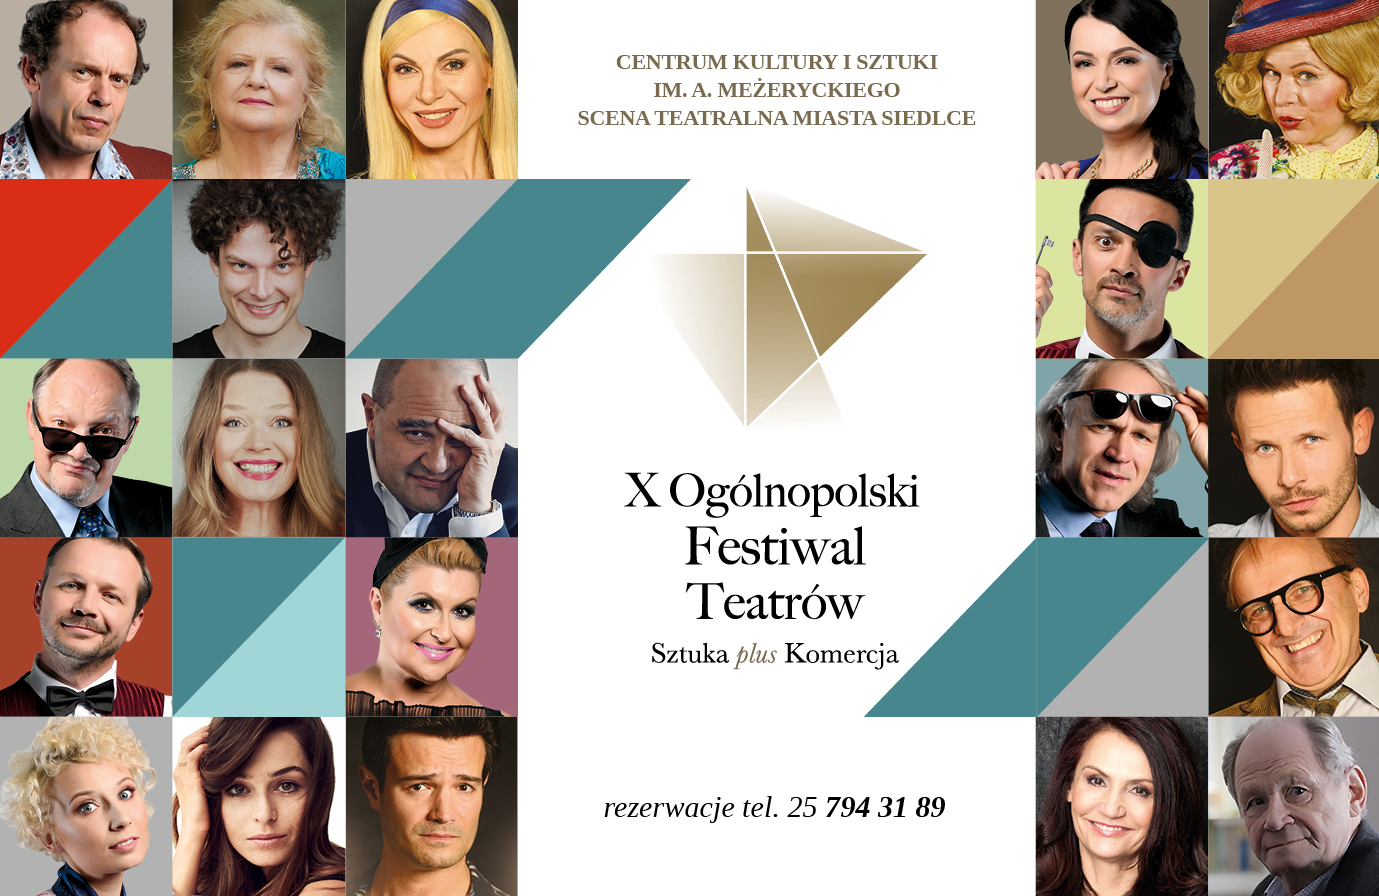 Zapraszamy do zapoznania się z ofertą spektakli i koncertów w ramach X Ogólnopolskiego Festiwalu Teatrów "Sztuka plus Komercja".